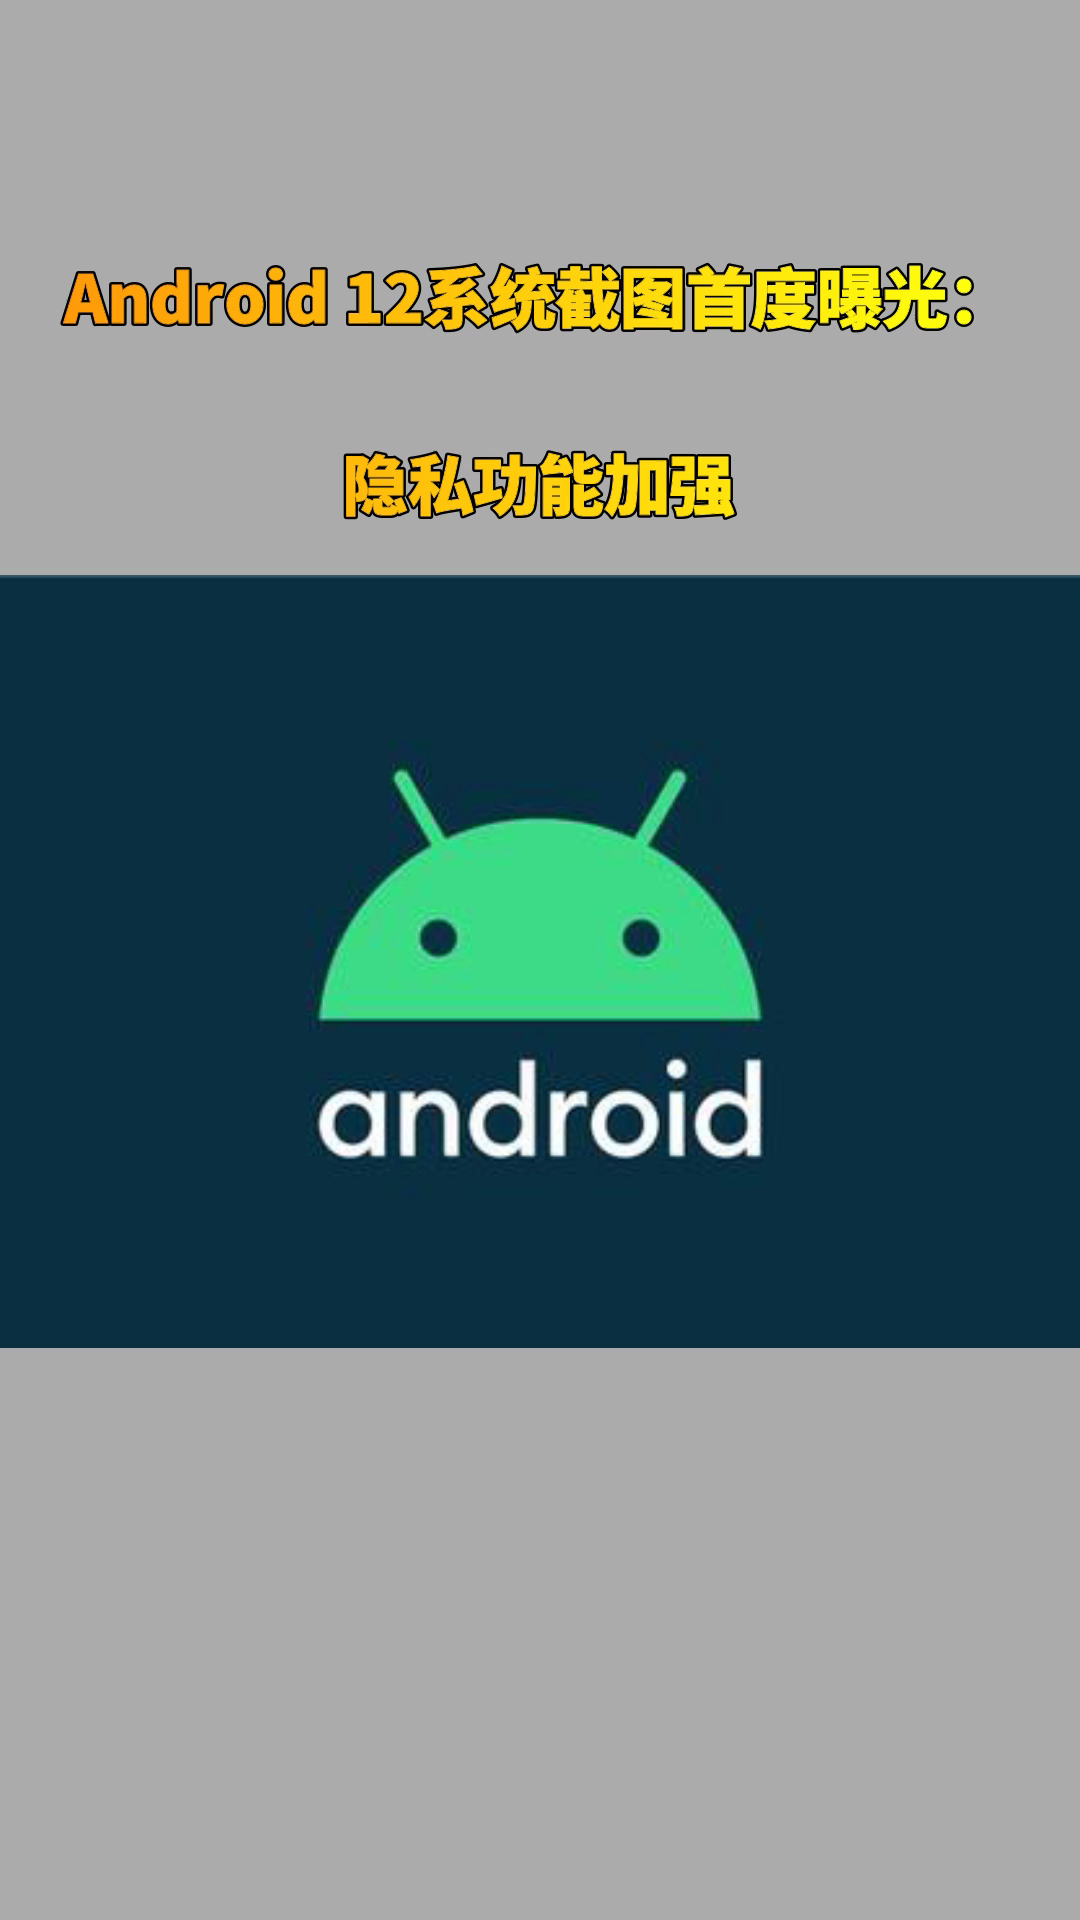 Android 12系统截图首度曝光：隐私功能加强